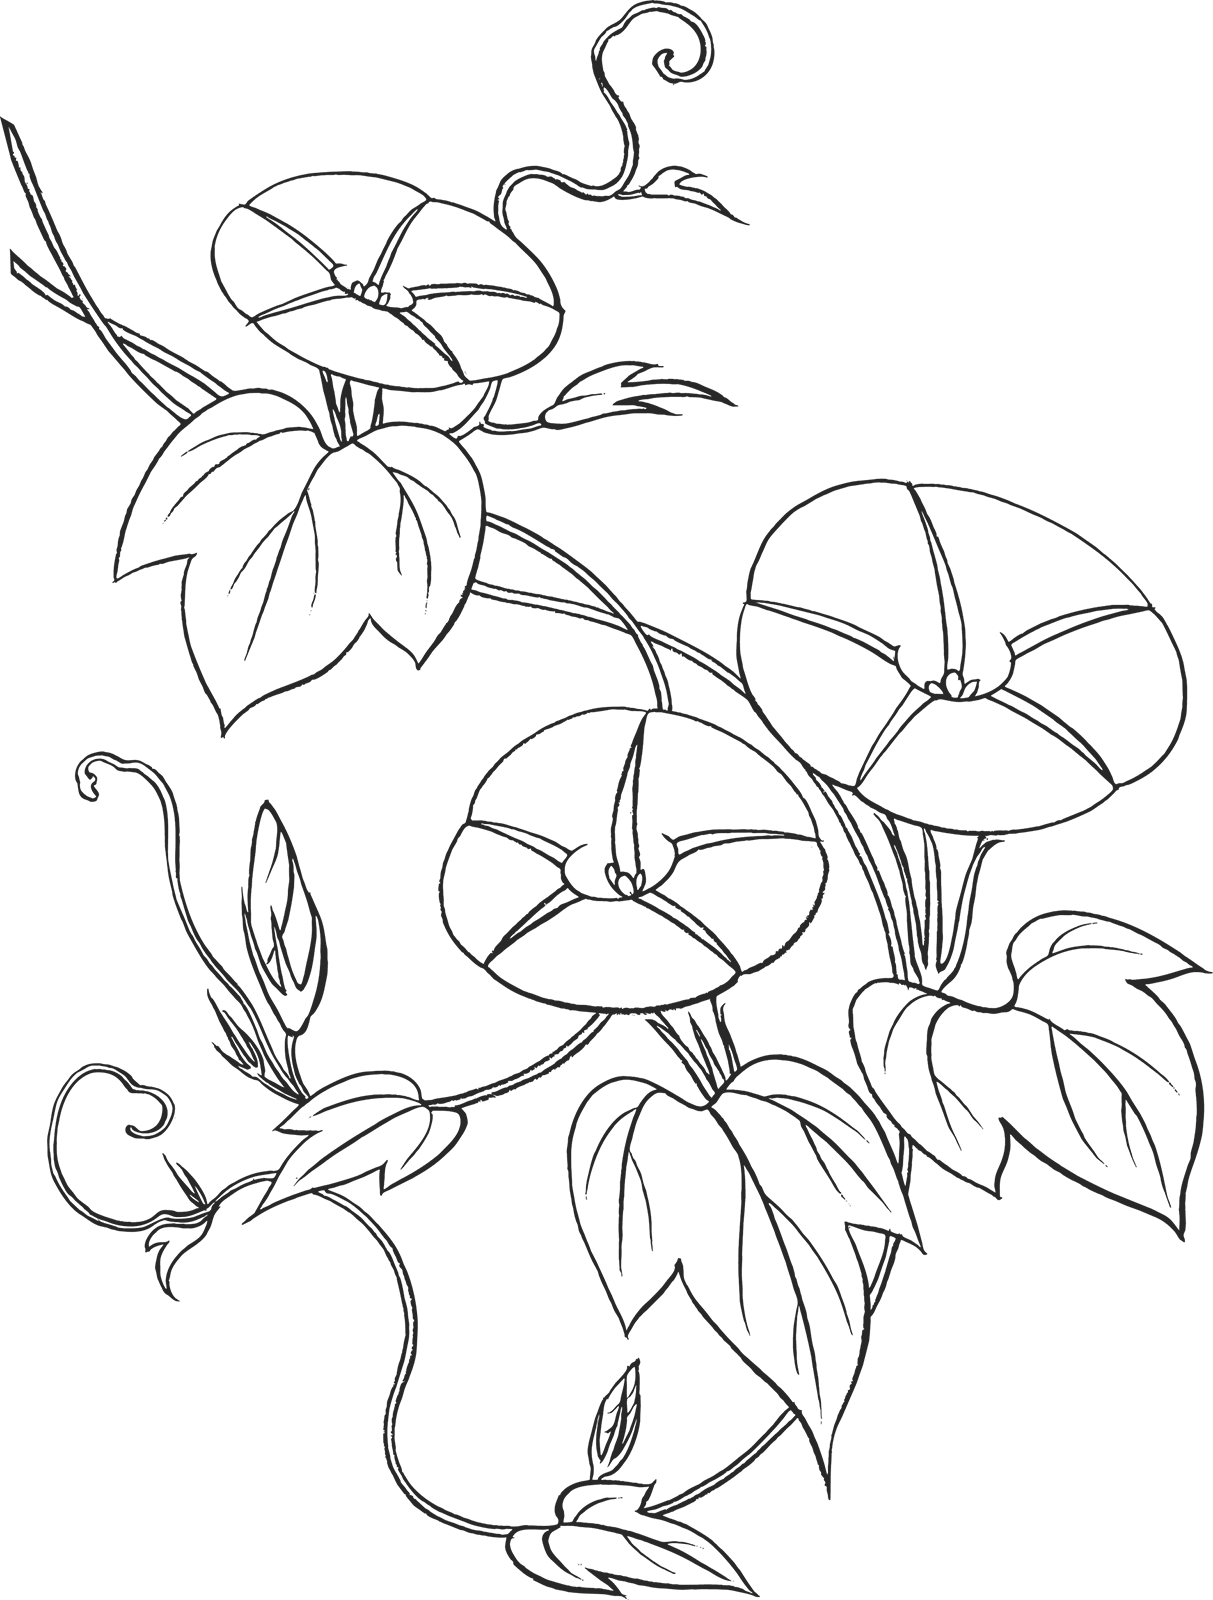 リアルな花のイラスト フリー素材 白黒 モノクロno 65 白黒 アサガオ 蔓葉